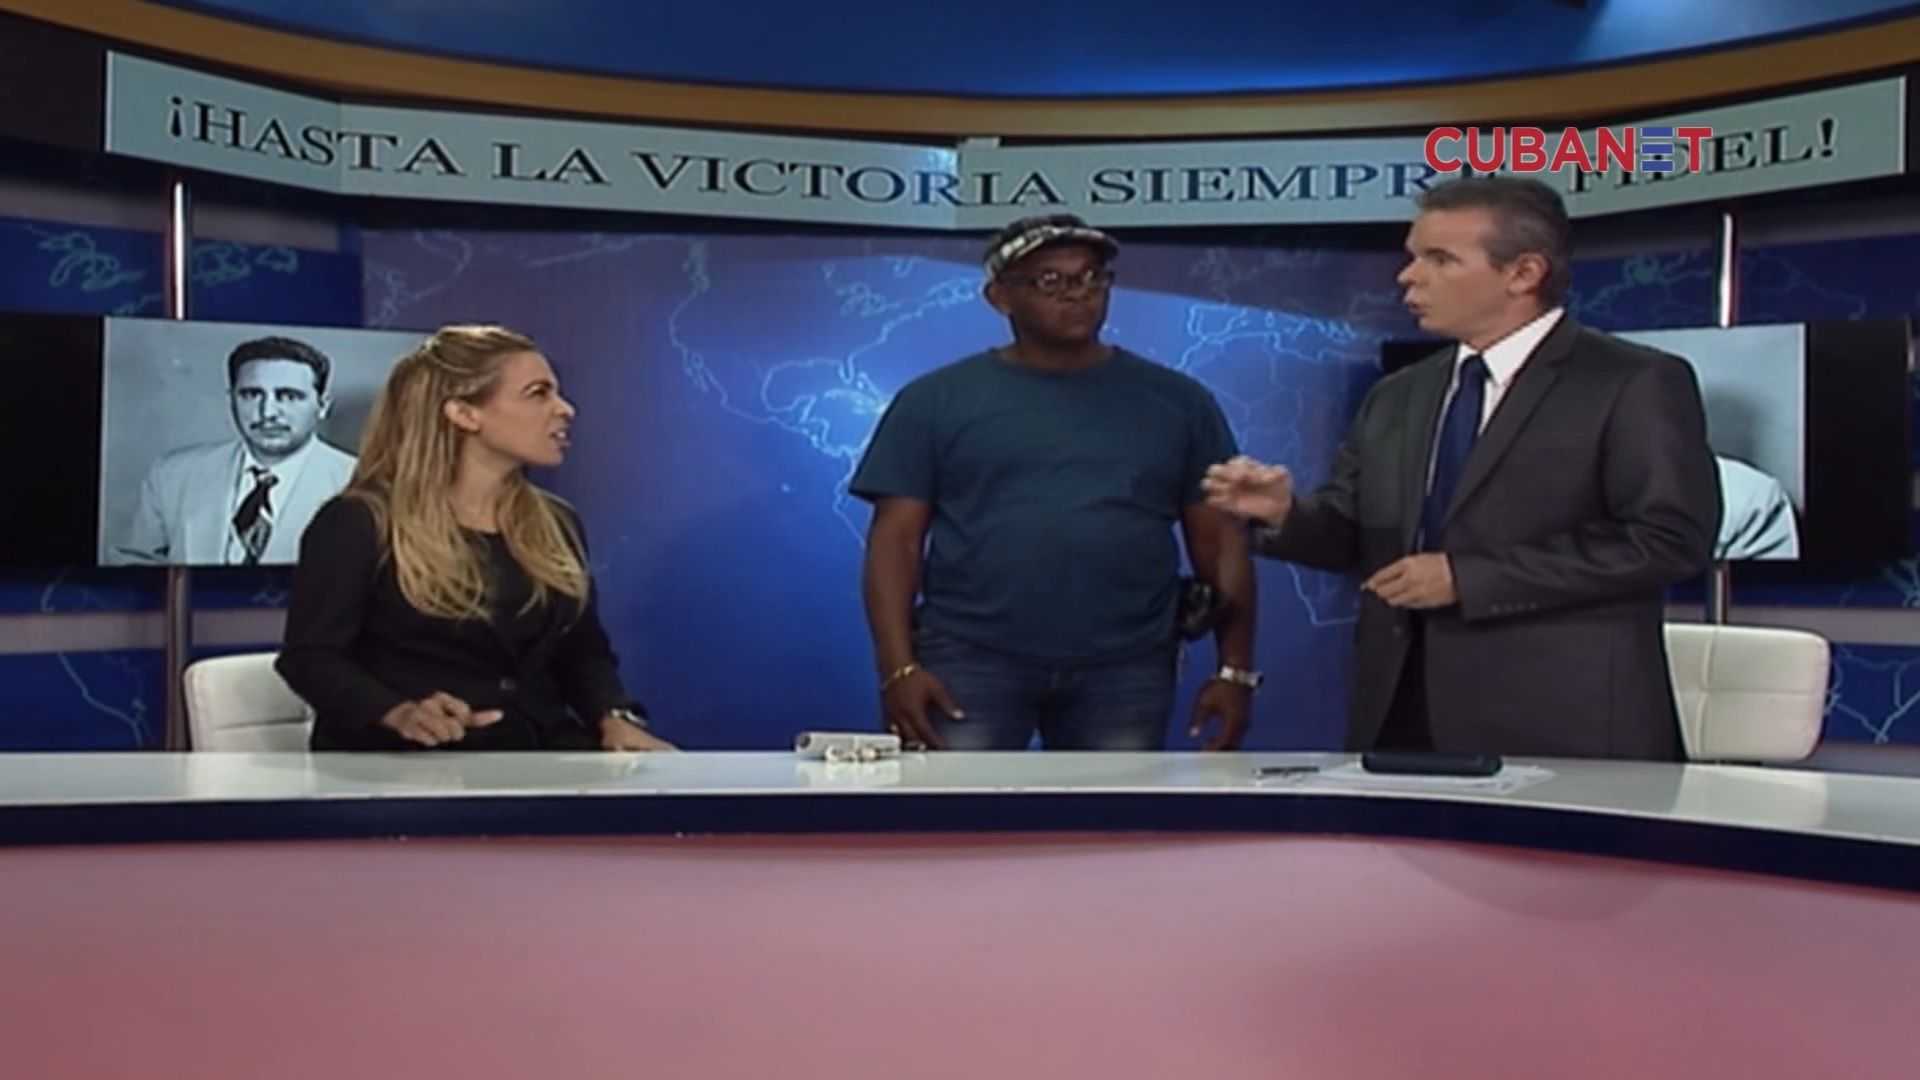 El conflictiu 'bon dia' de la televisió cubana